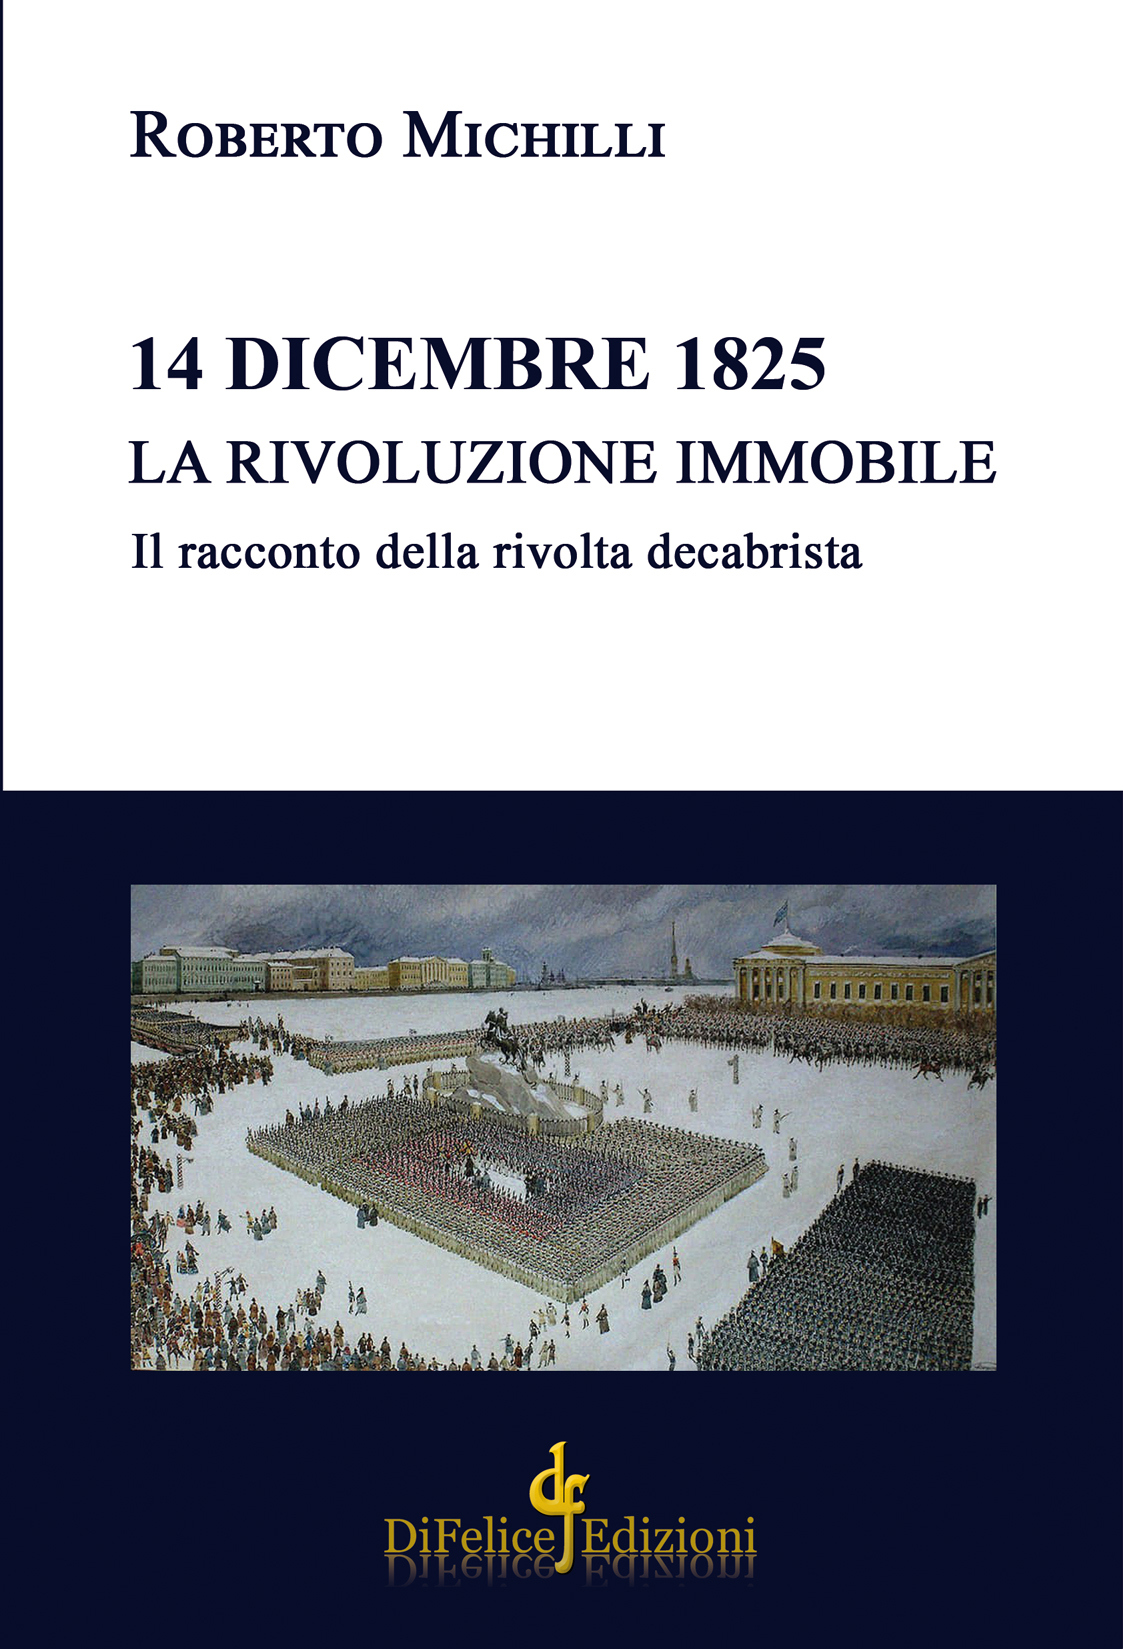 Roberto Michilli, 14 DICEMBRE 1825. LA RIVOLUZIONE IMMOBILE. IL RACCONTO DELLA RIVOLTA DECABRISTA